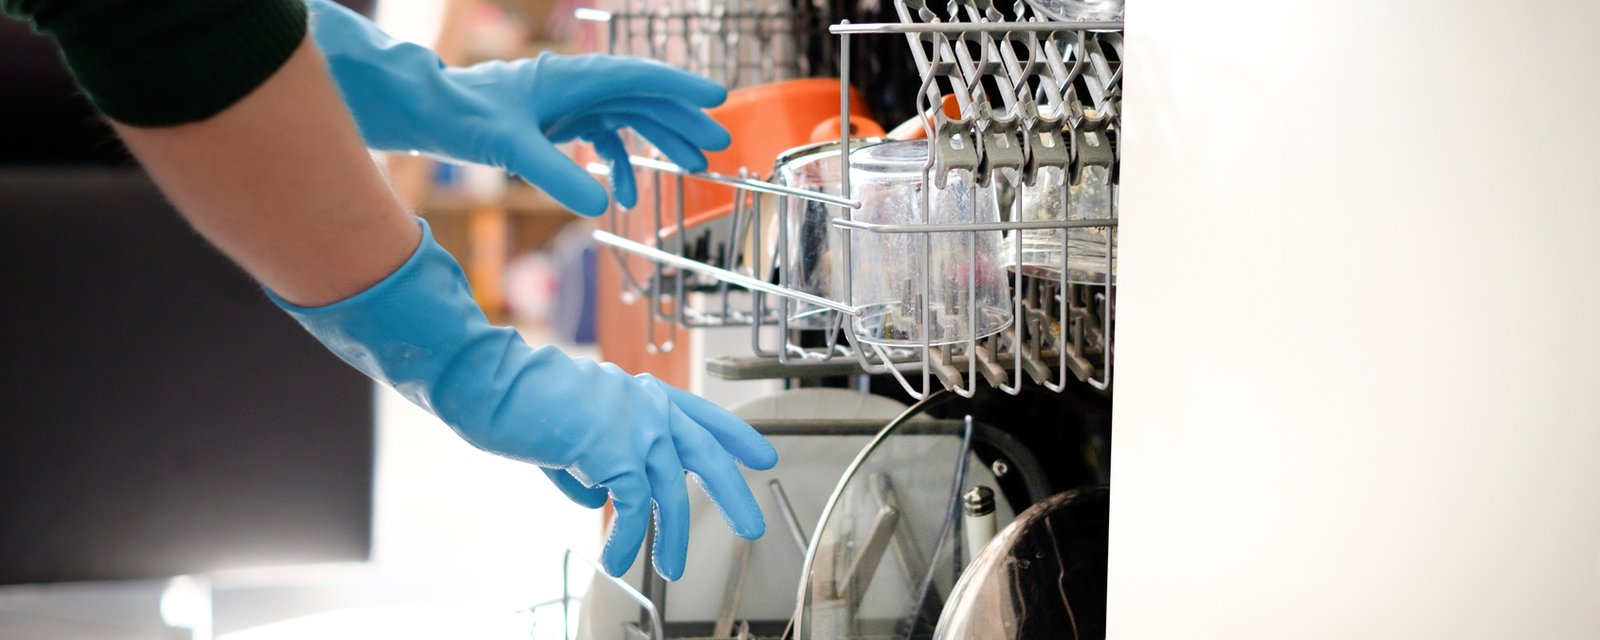 6 façons d'utiliser votre lave-vaisselle afin que tout soit bien propre!